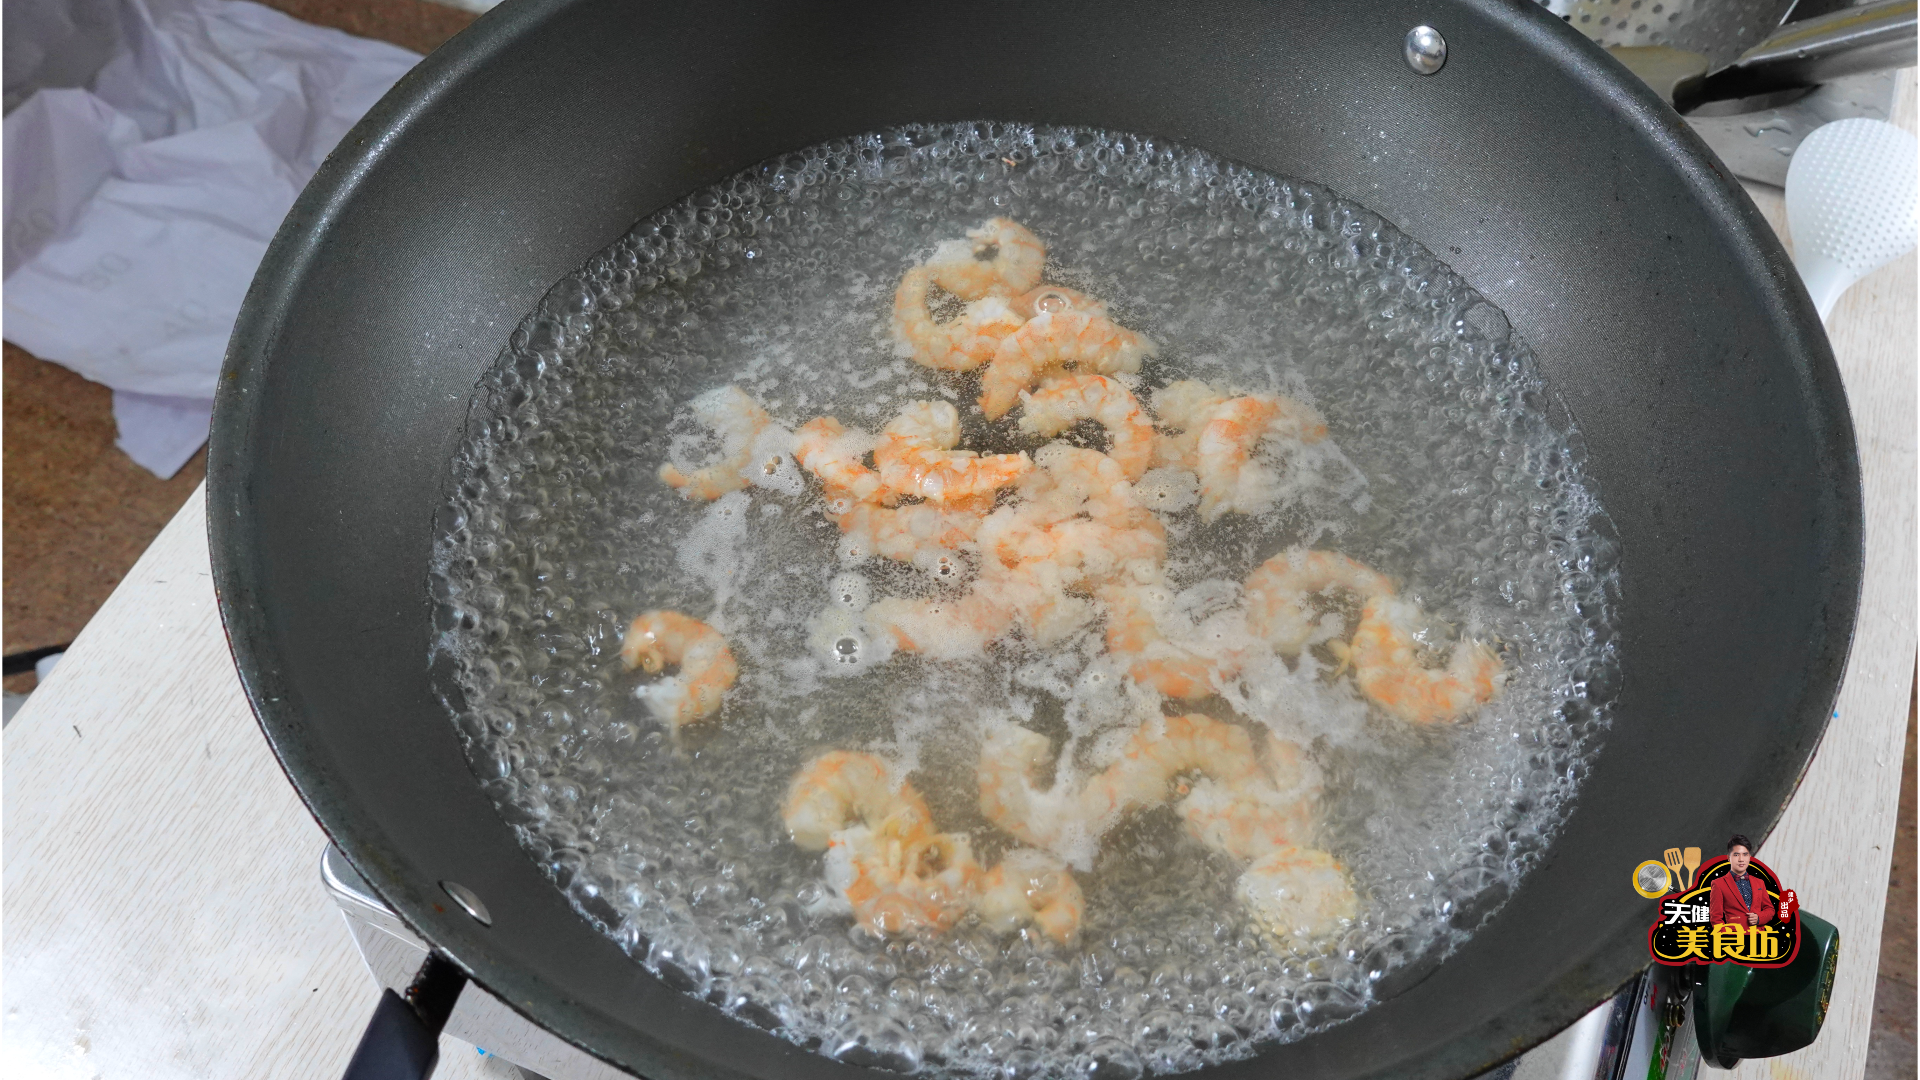 广式黄瓜炒虾仁的做法，配方和步骤全分享给你，厨房小白也能学会